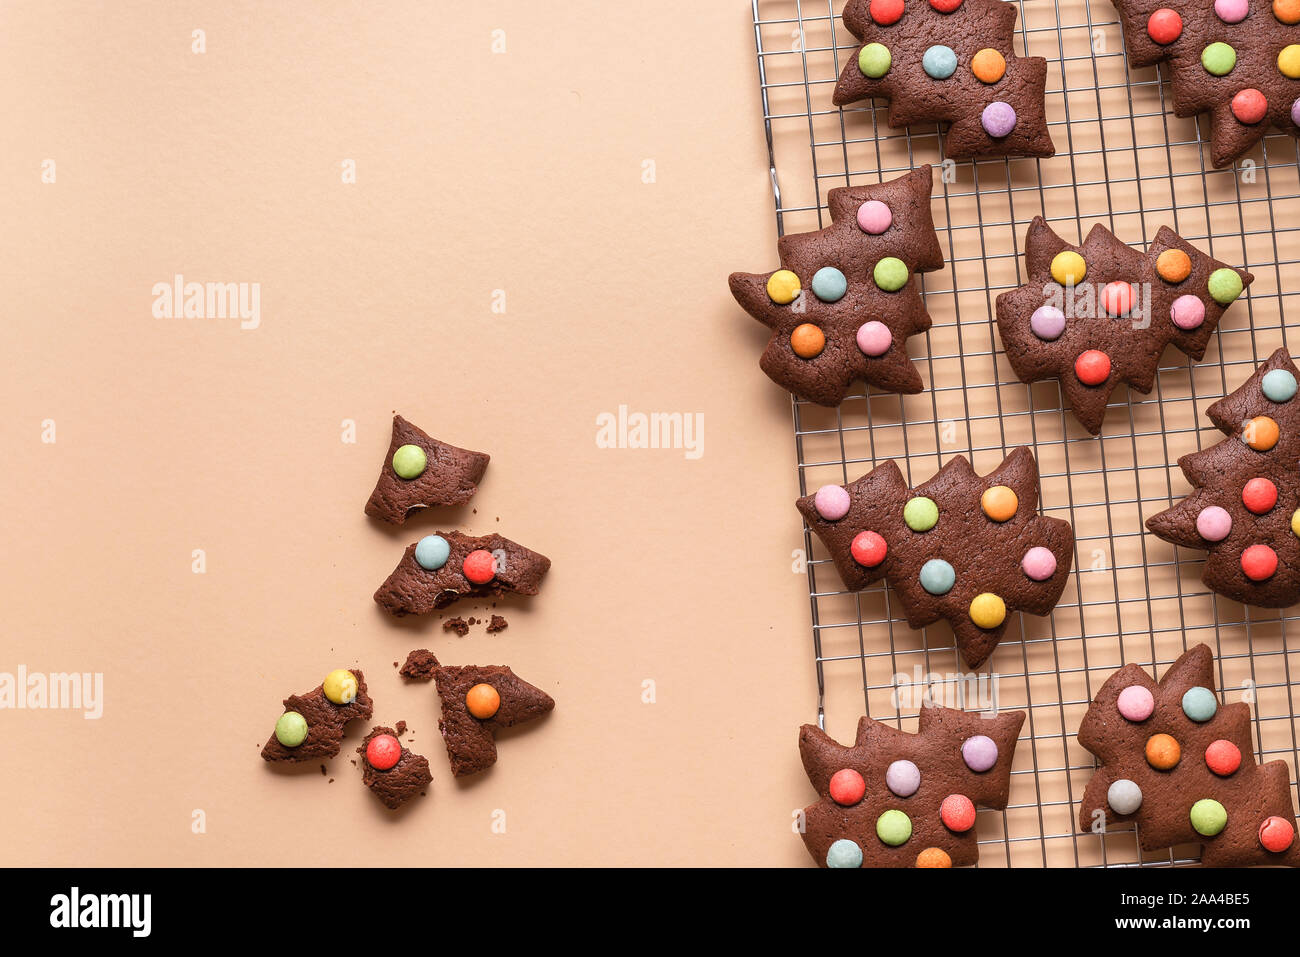 auf mit auf Form mit Rack, Schokolade Hintergrund Lebkuchen Smarties, gelbem Weihnachtsbaum dekoriert Stockfotografie backen Alamy Kühlung - Cookies einer in Plätzchen